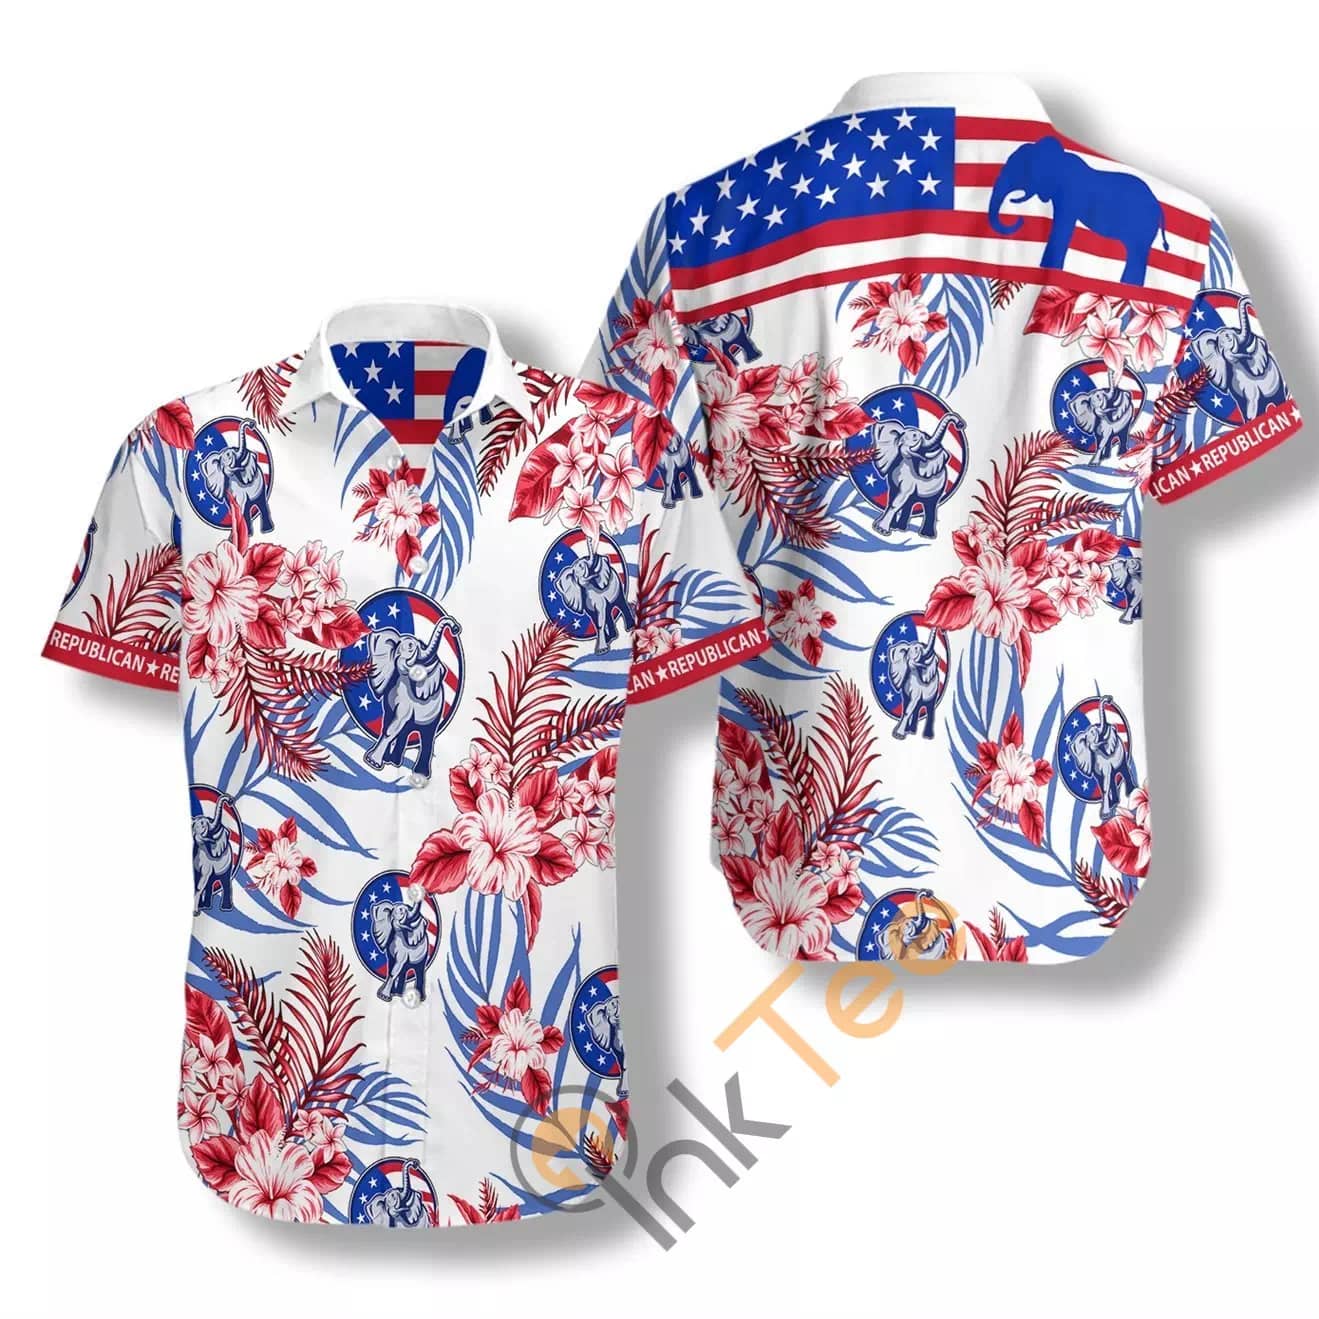 Republican N515 Hawaiian Shirts